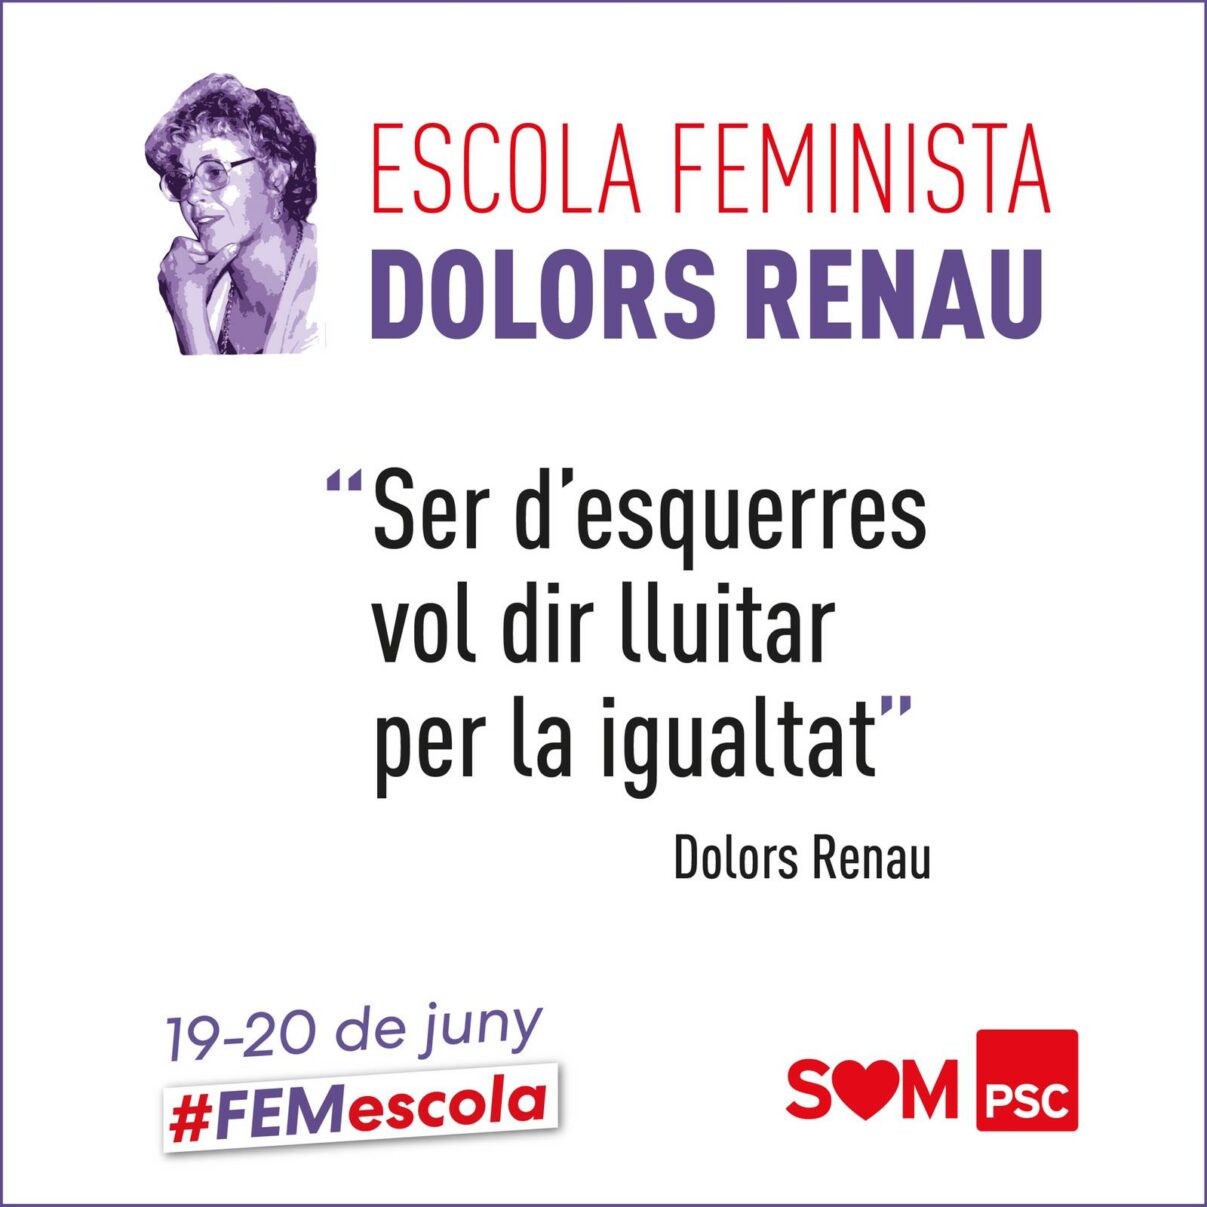 Escola Feminista del PSC “Dolors Renau”